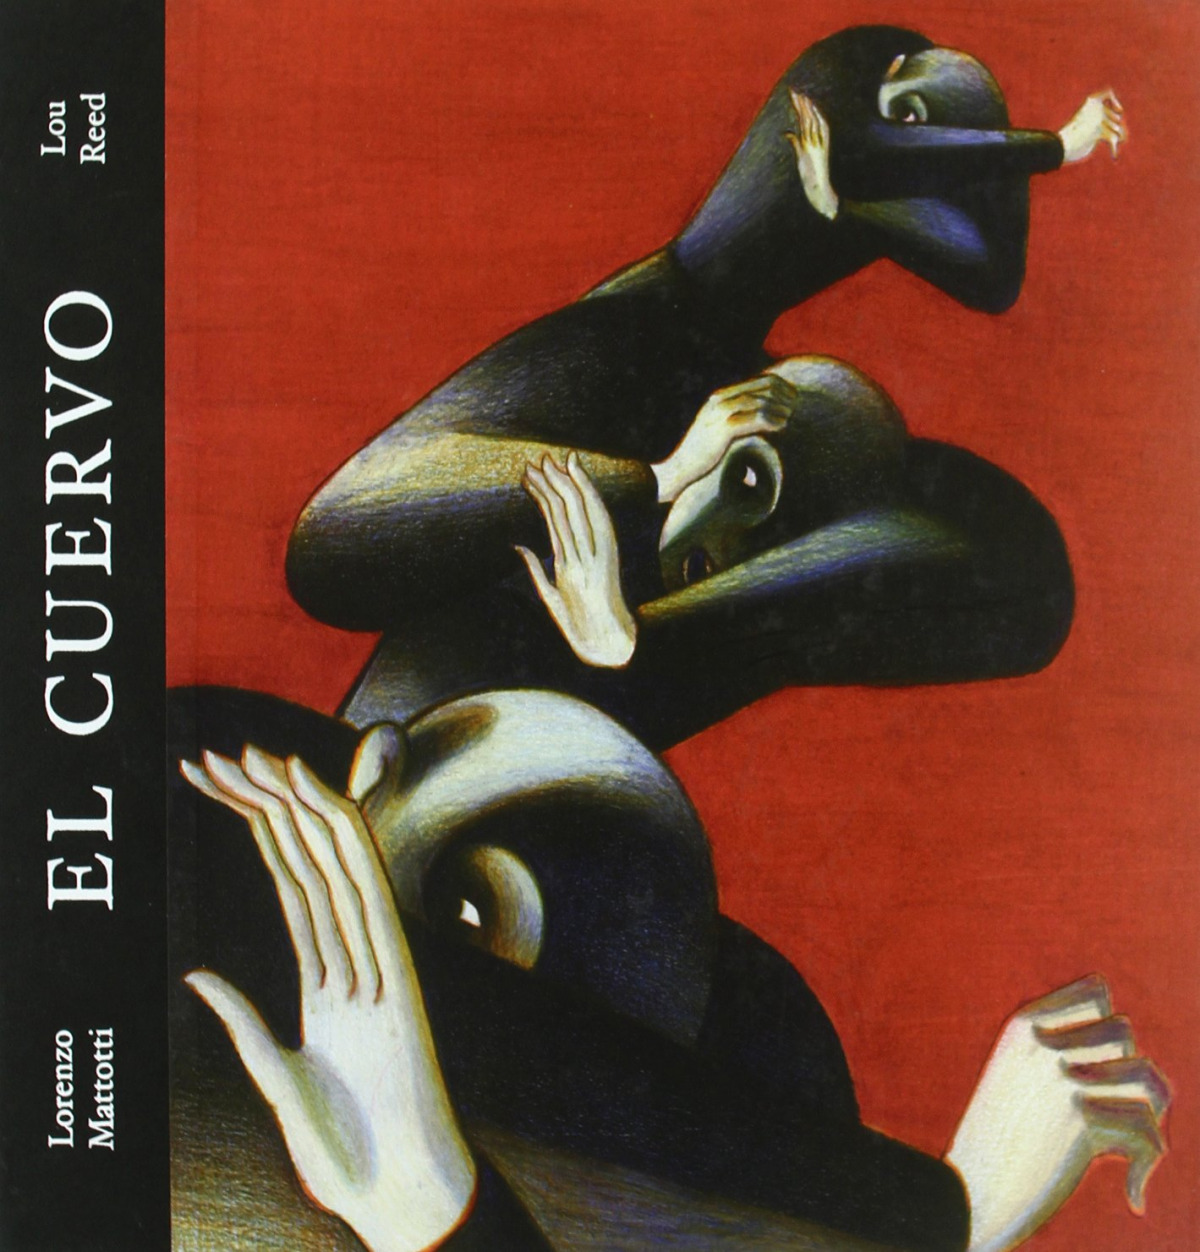 El cuervo - Lou Reed Y Lorenzo Mattotti